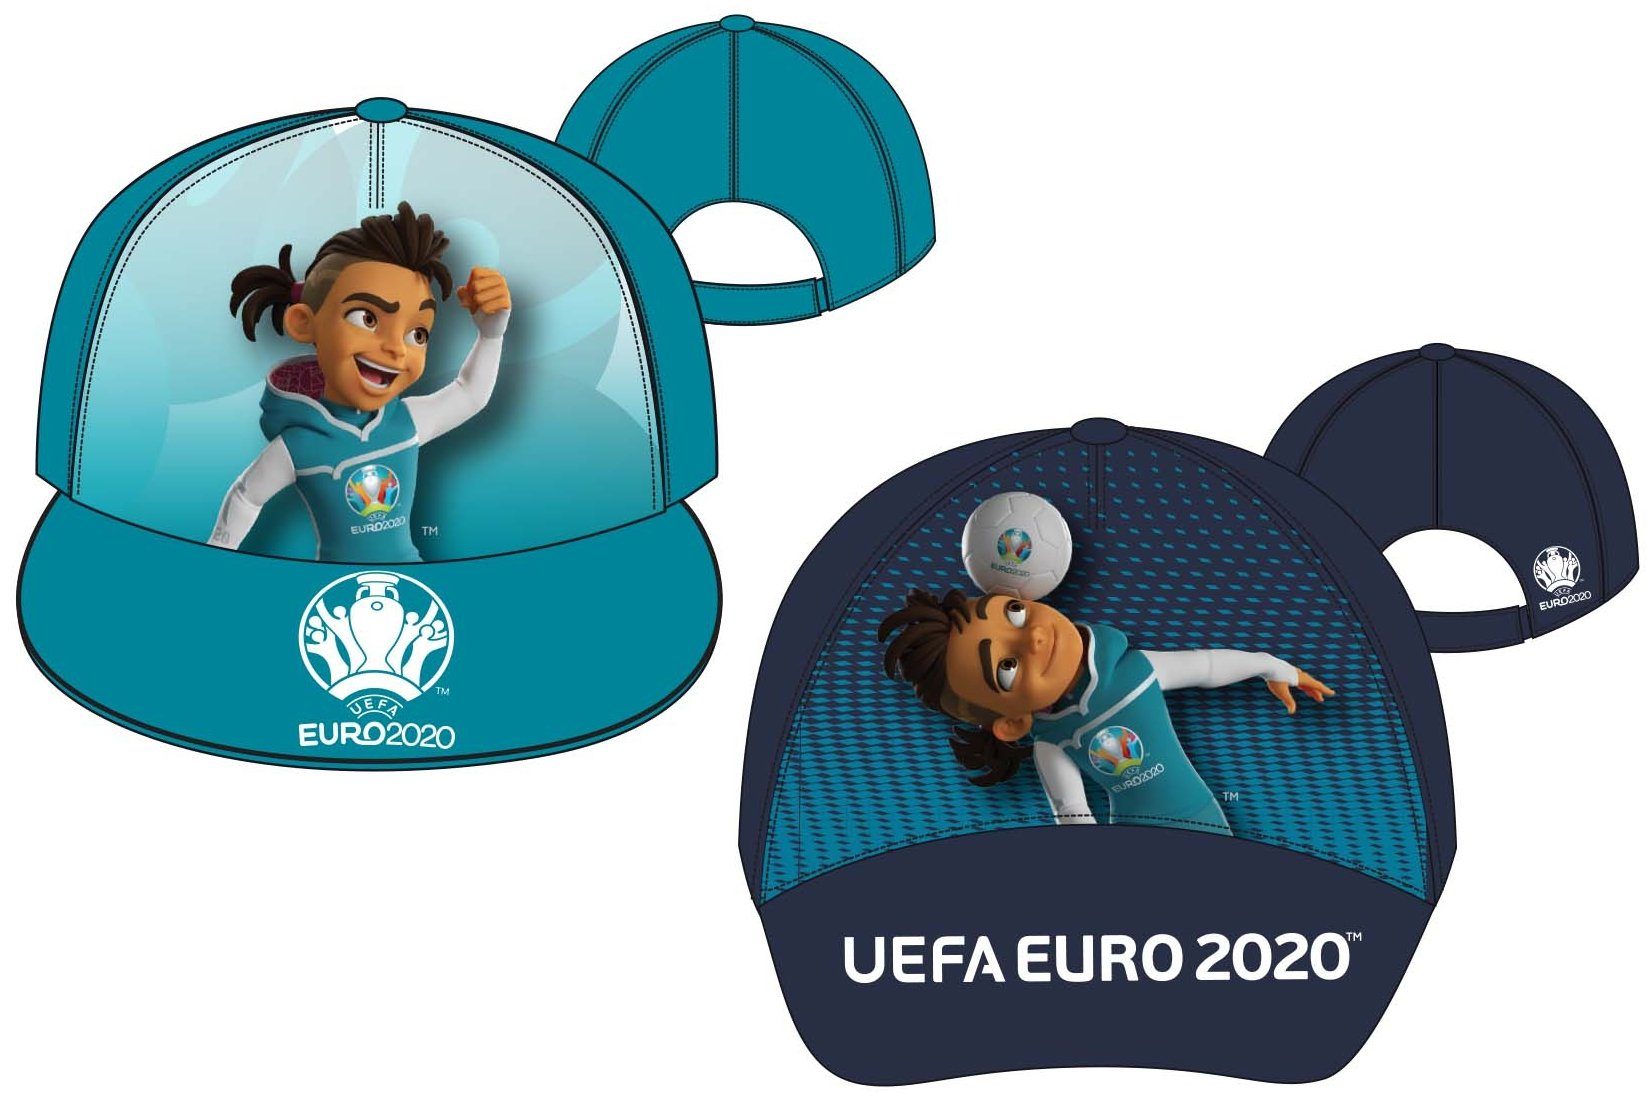 coole-fun-t-shirts Schirmmütze EURO 2020 / 2021 Kinder Basecap Schirmmütze Fußball EM Europameisterschaft Base und Snapback Jungen + Mädchen für Kita, Schule, Einschulung Gr.52 + 54 dunkelblau